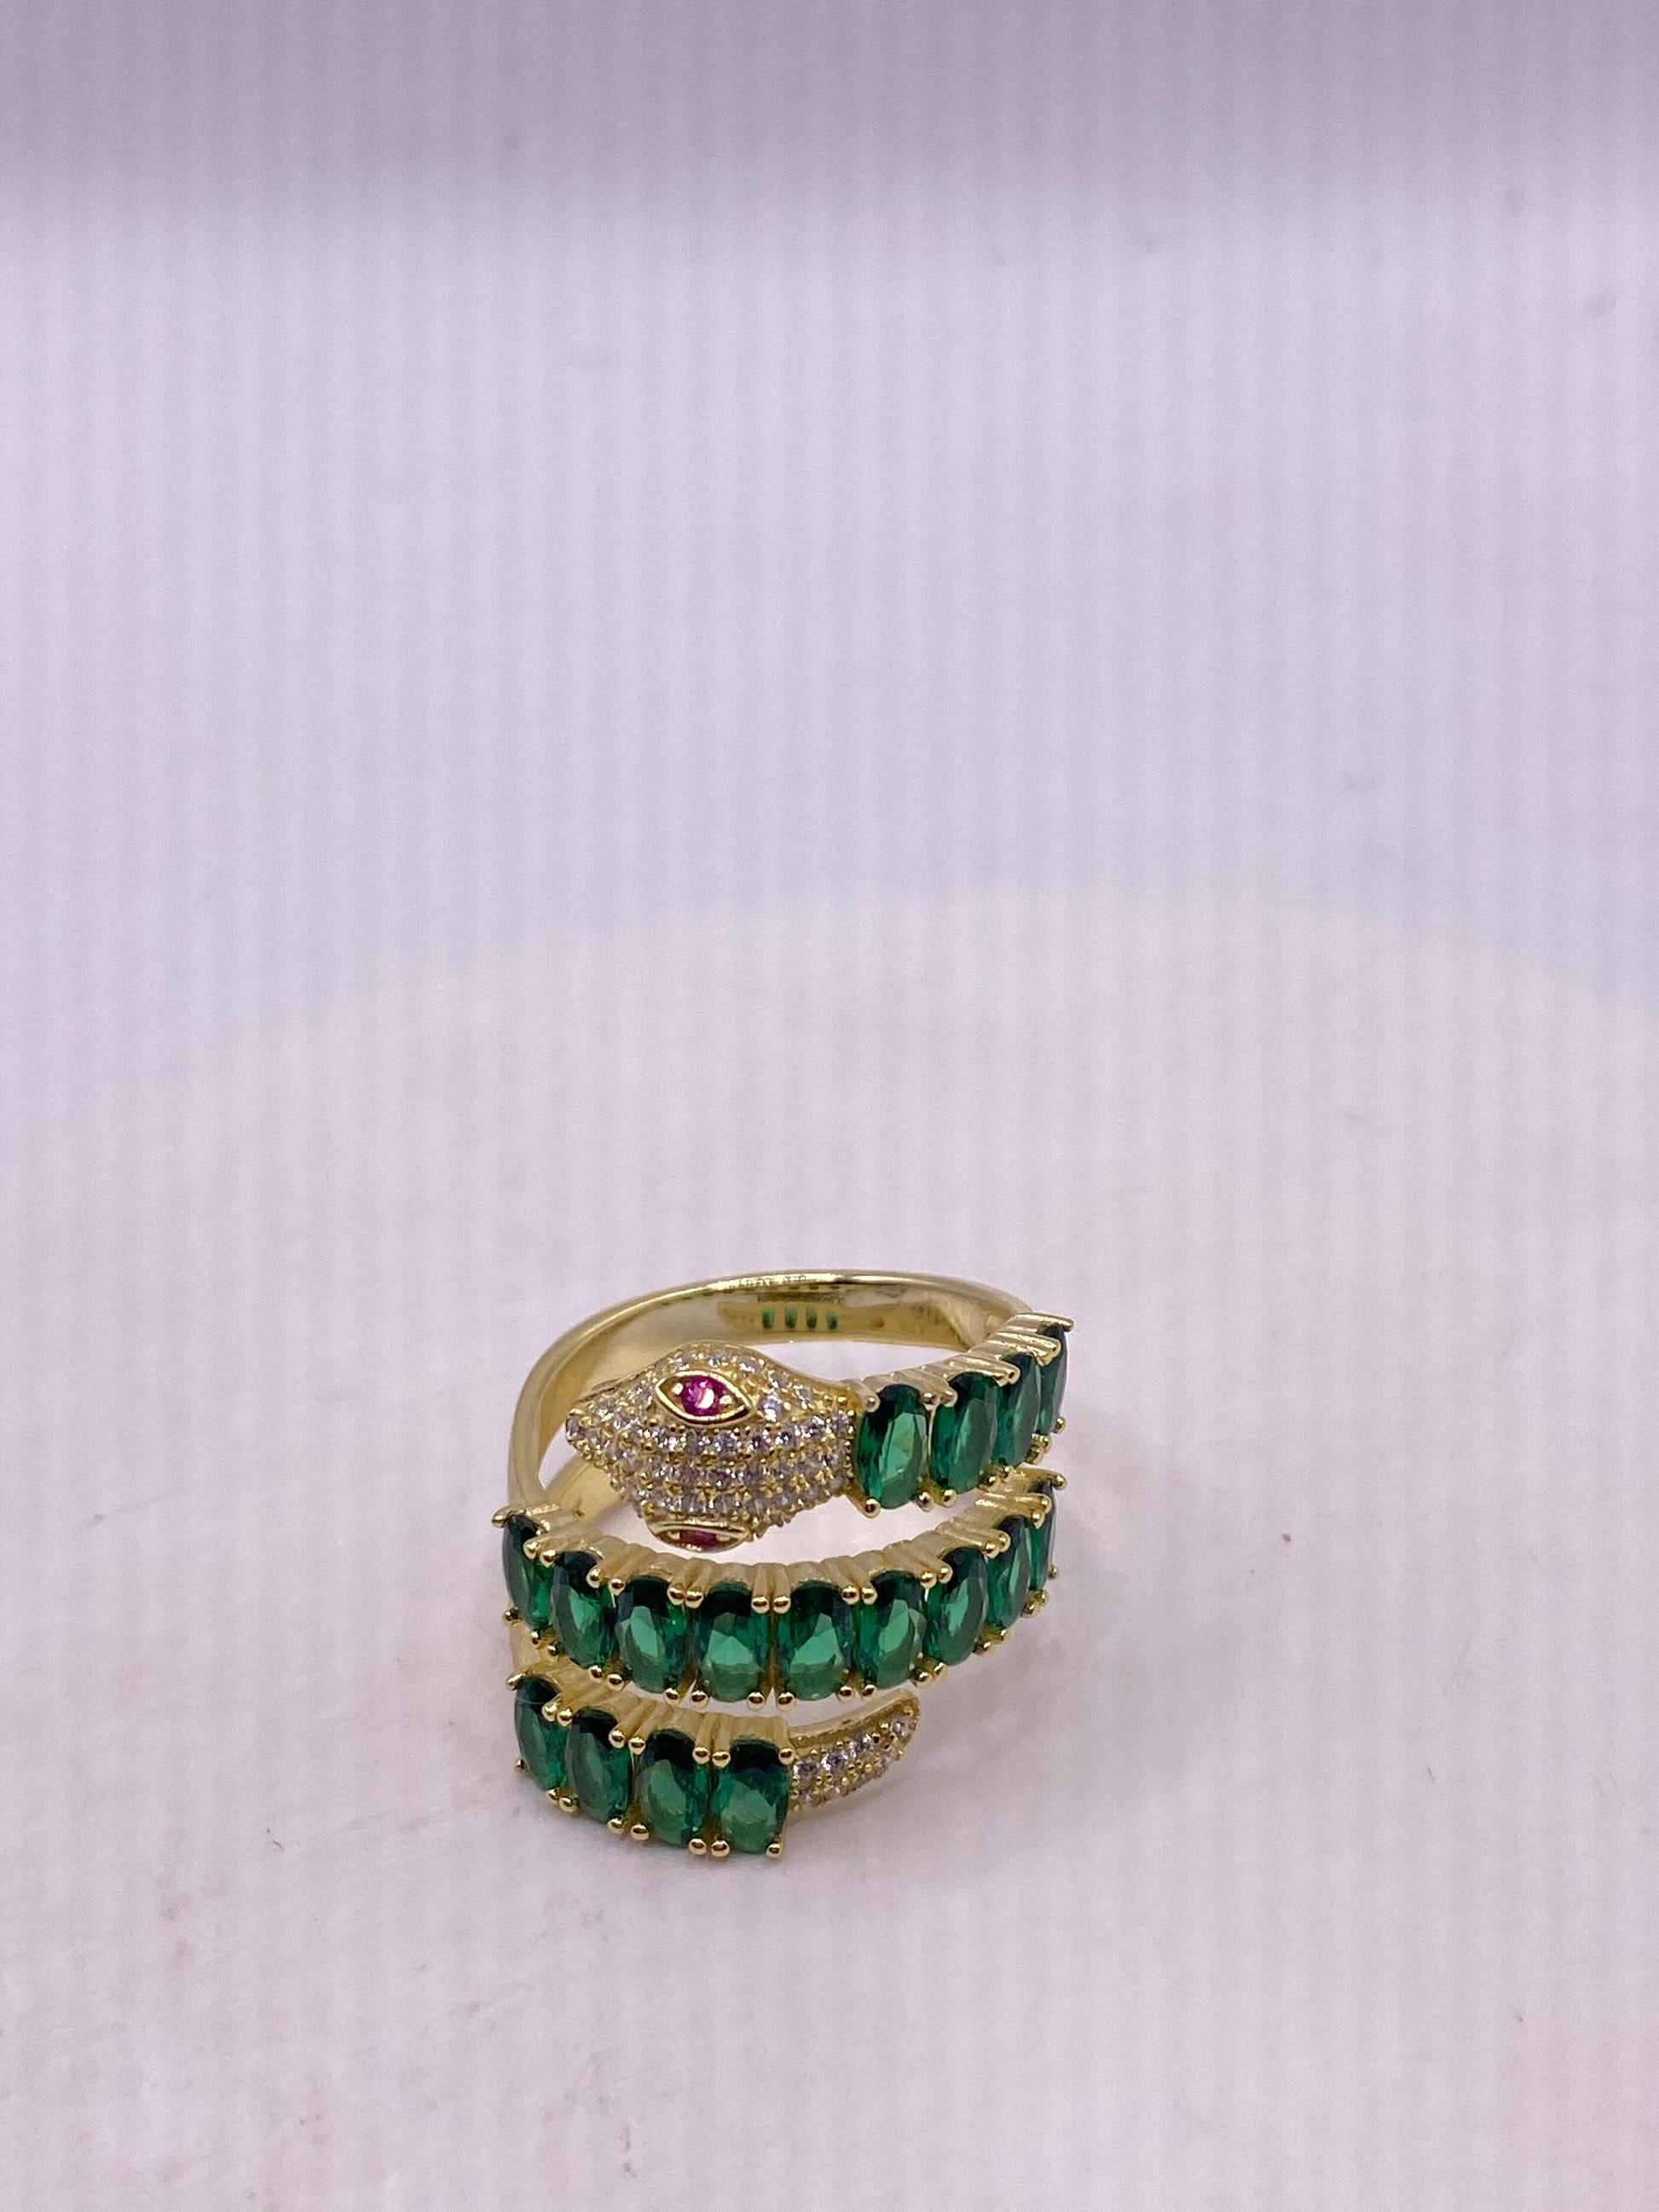 Vintage Gold Sterling Silver Adjustable Green Crystal Snake Ring